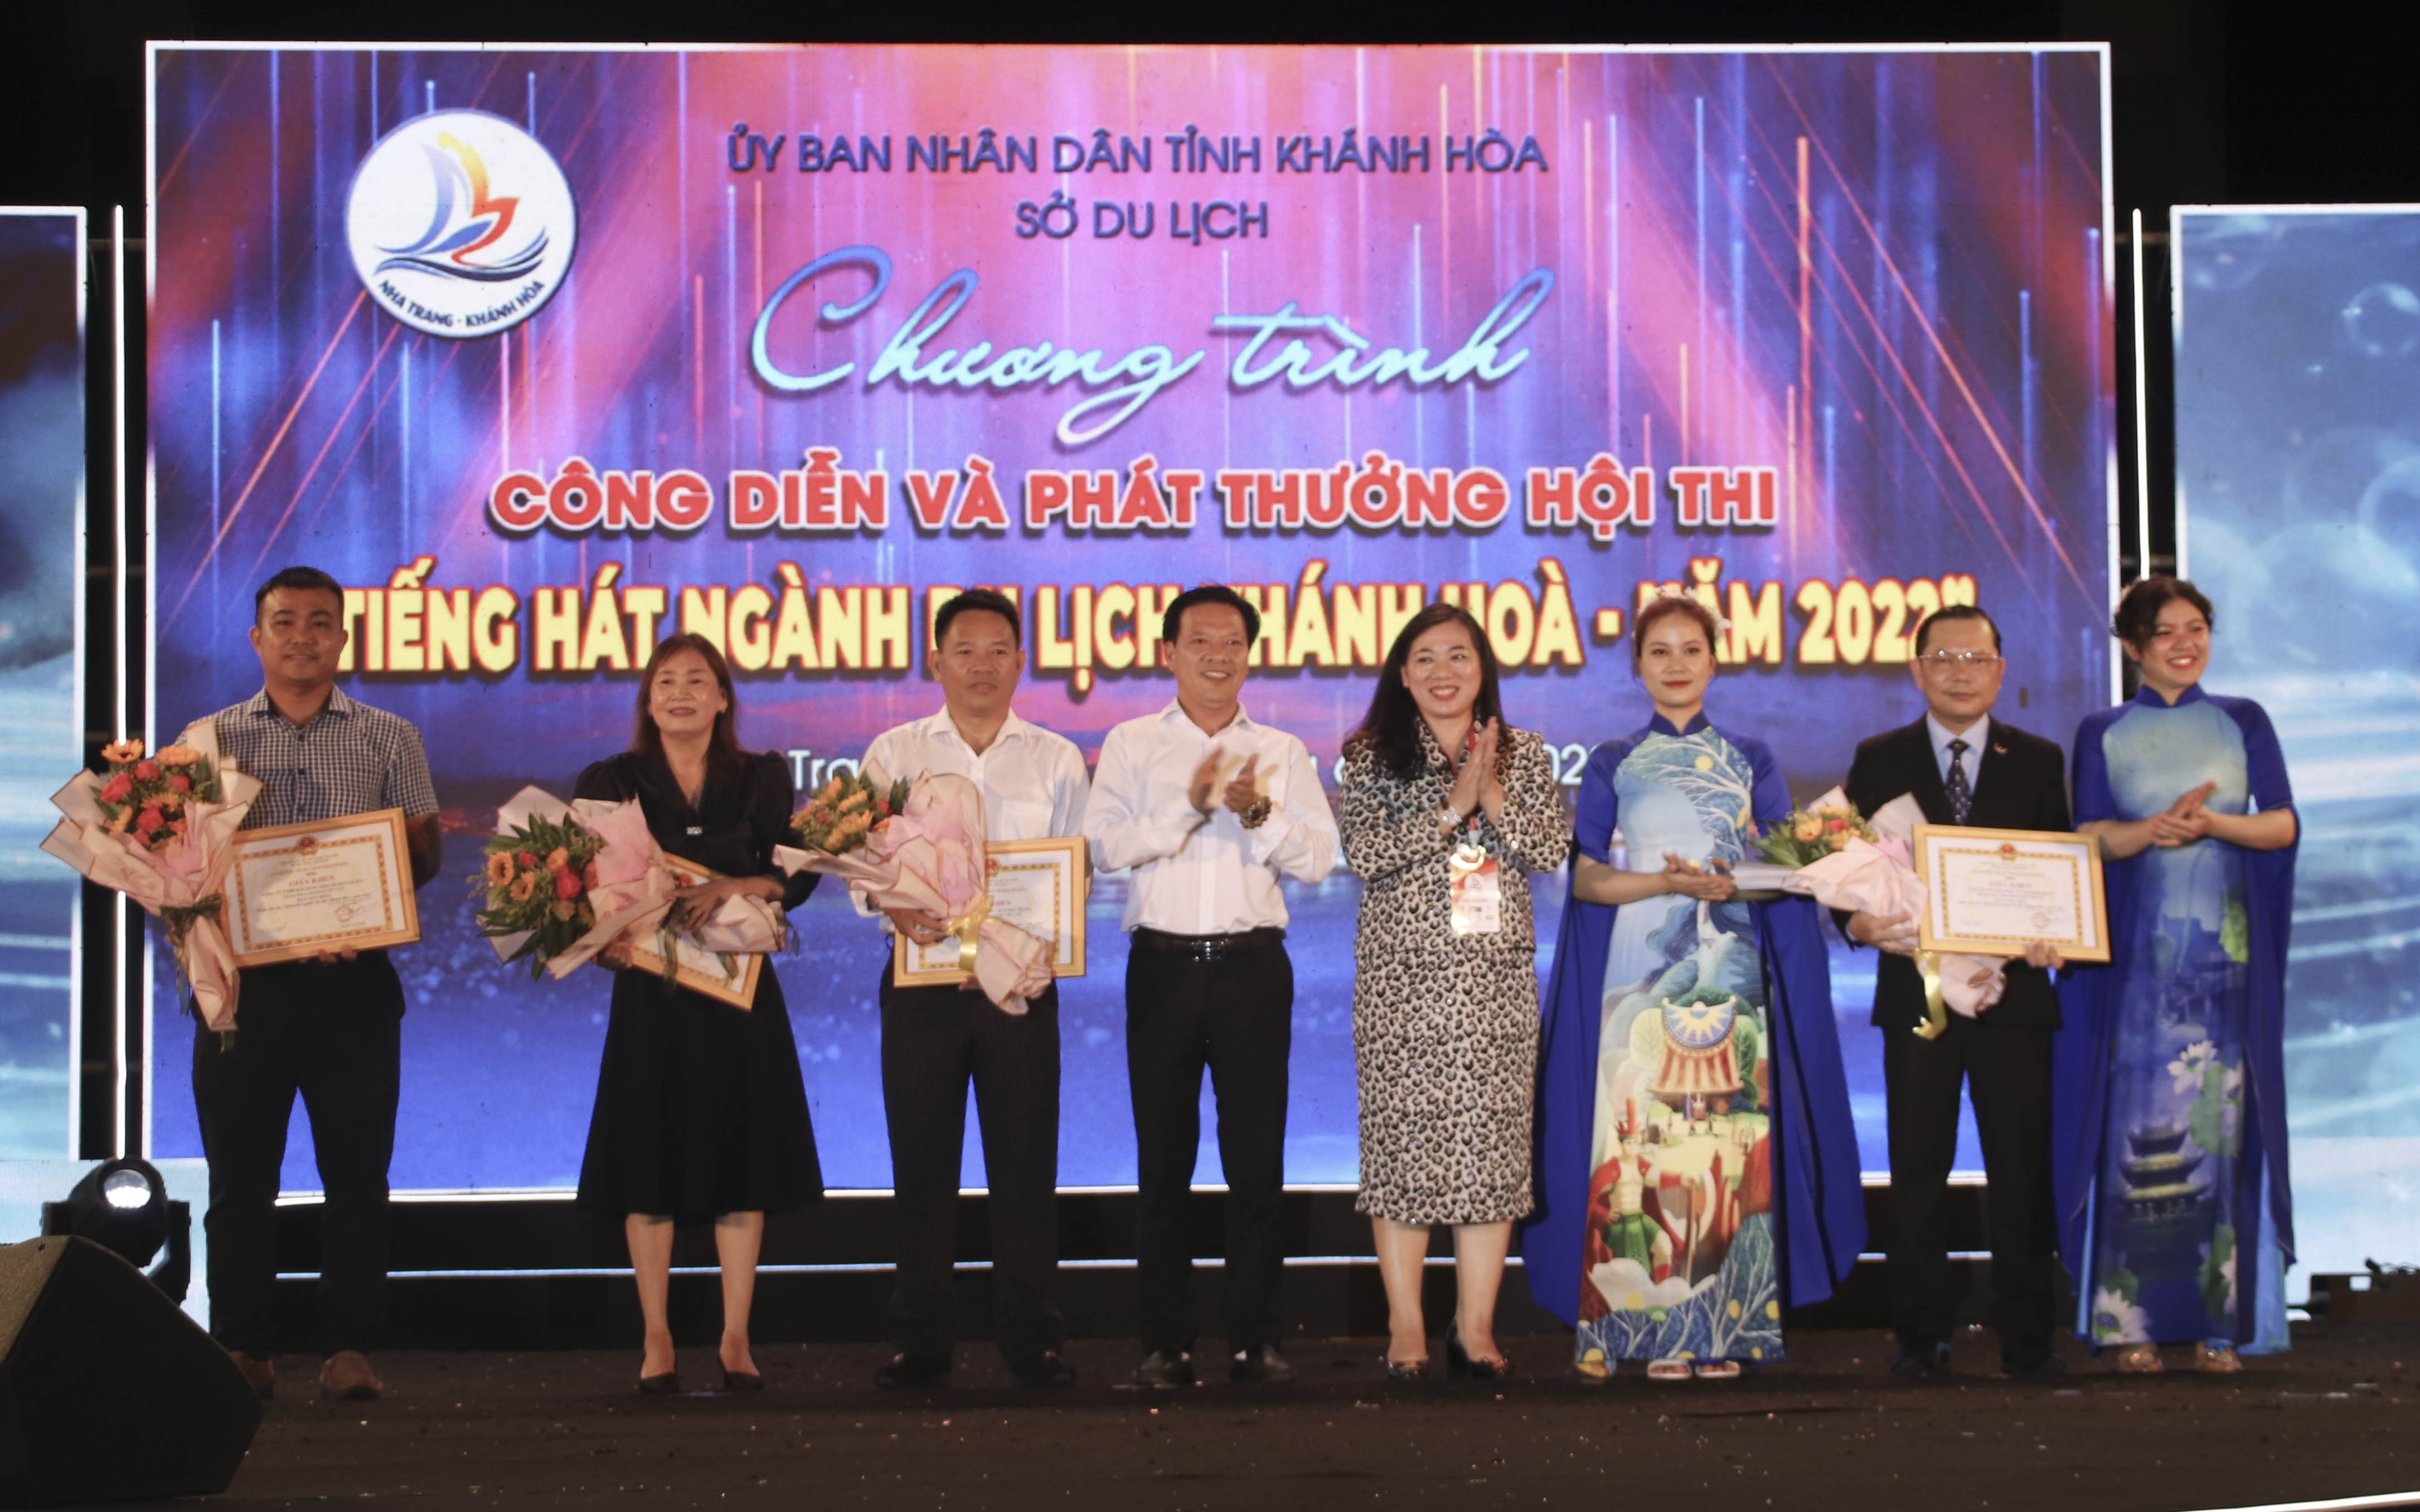 Trao giải Hội thi Tiếng hát ngành Du lịch Khánh Hòa năm 2022